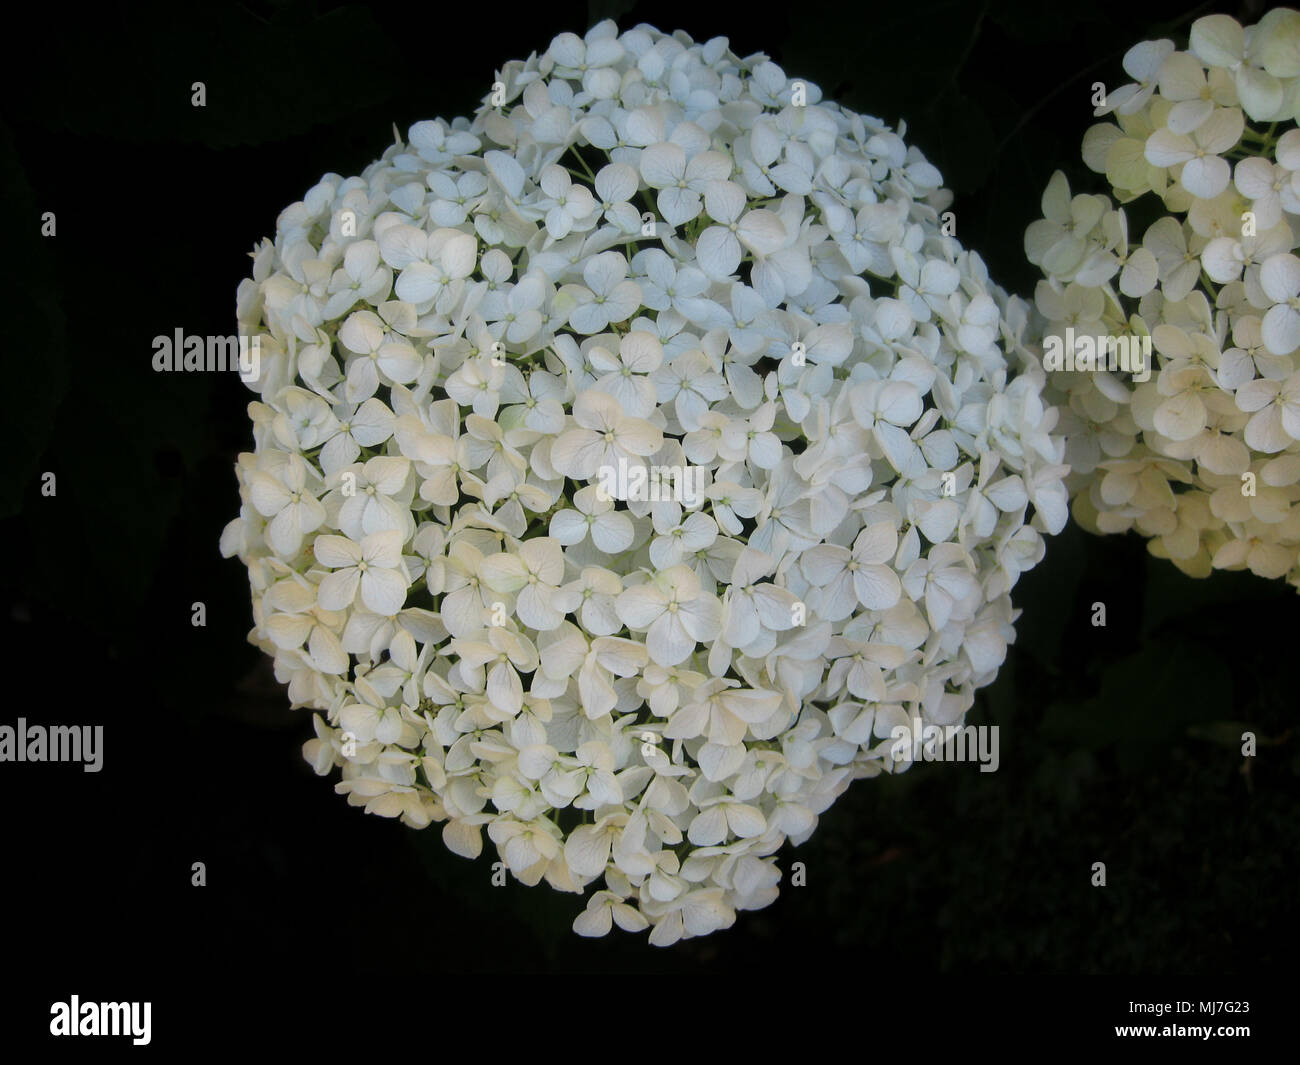 Wunderschöne weiße Blüte Blume, Kugel Blume Stockfotografie - Alamy